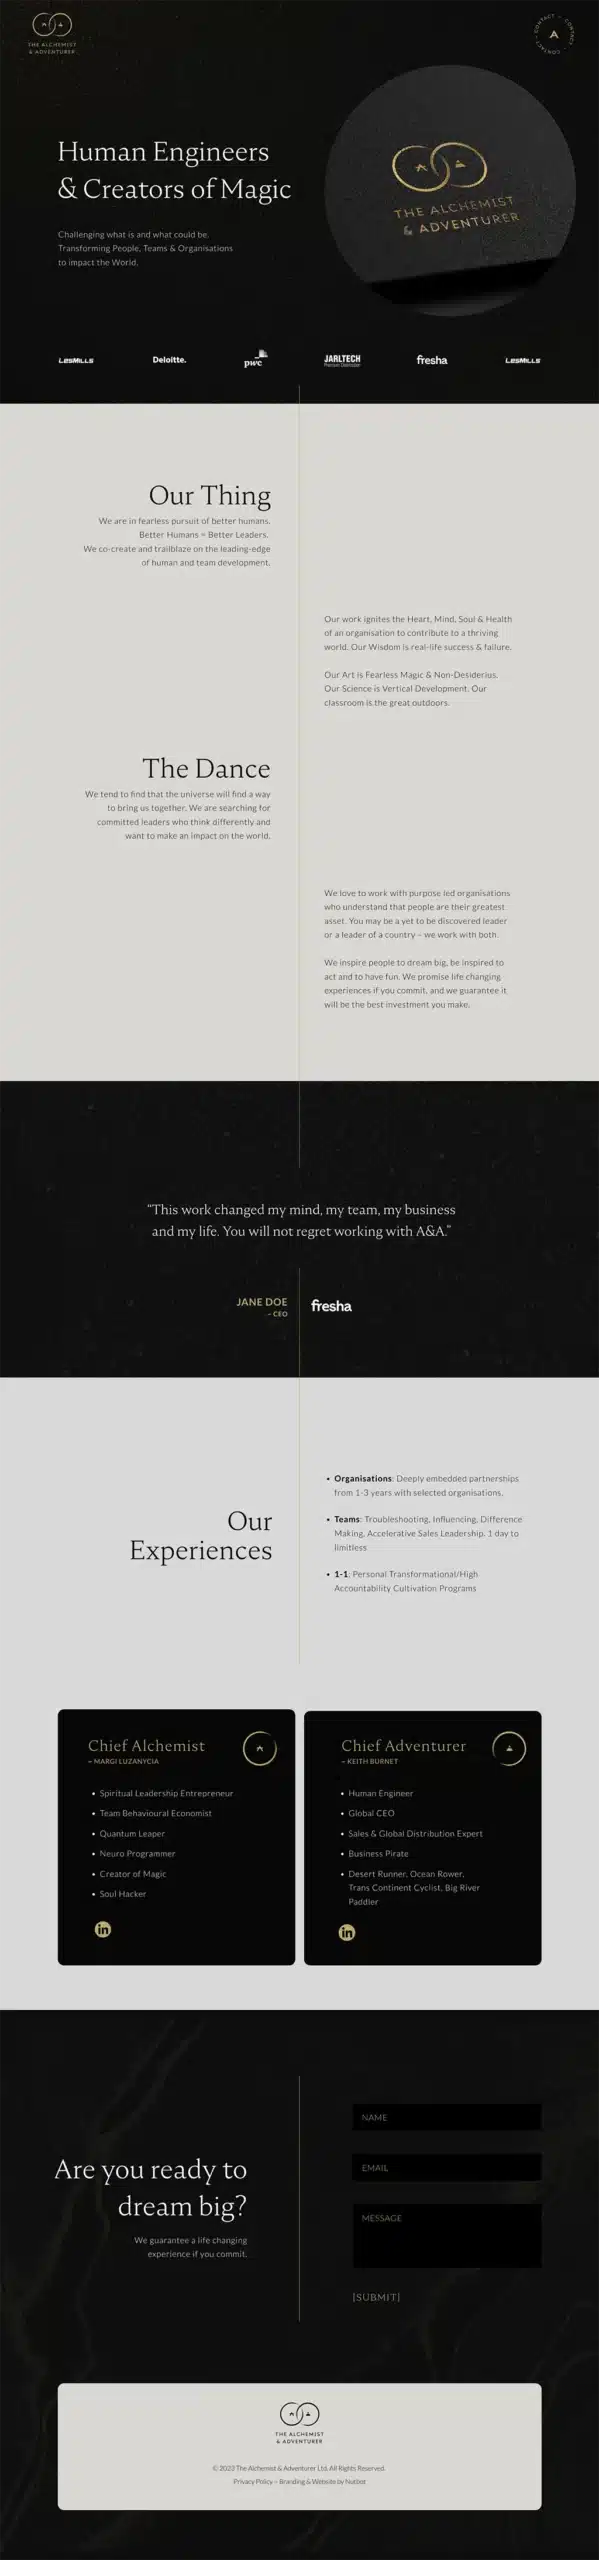 The Alchemist & Adventurer - Web Page Design